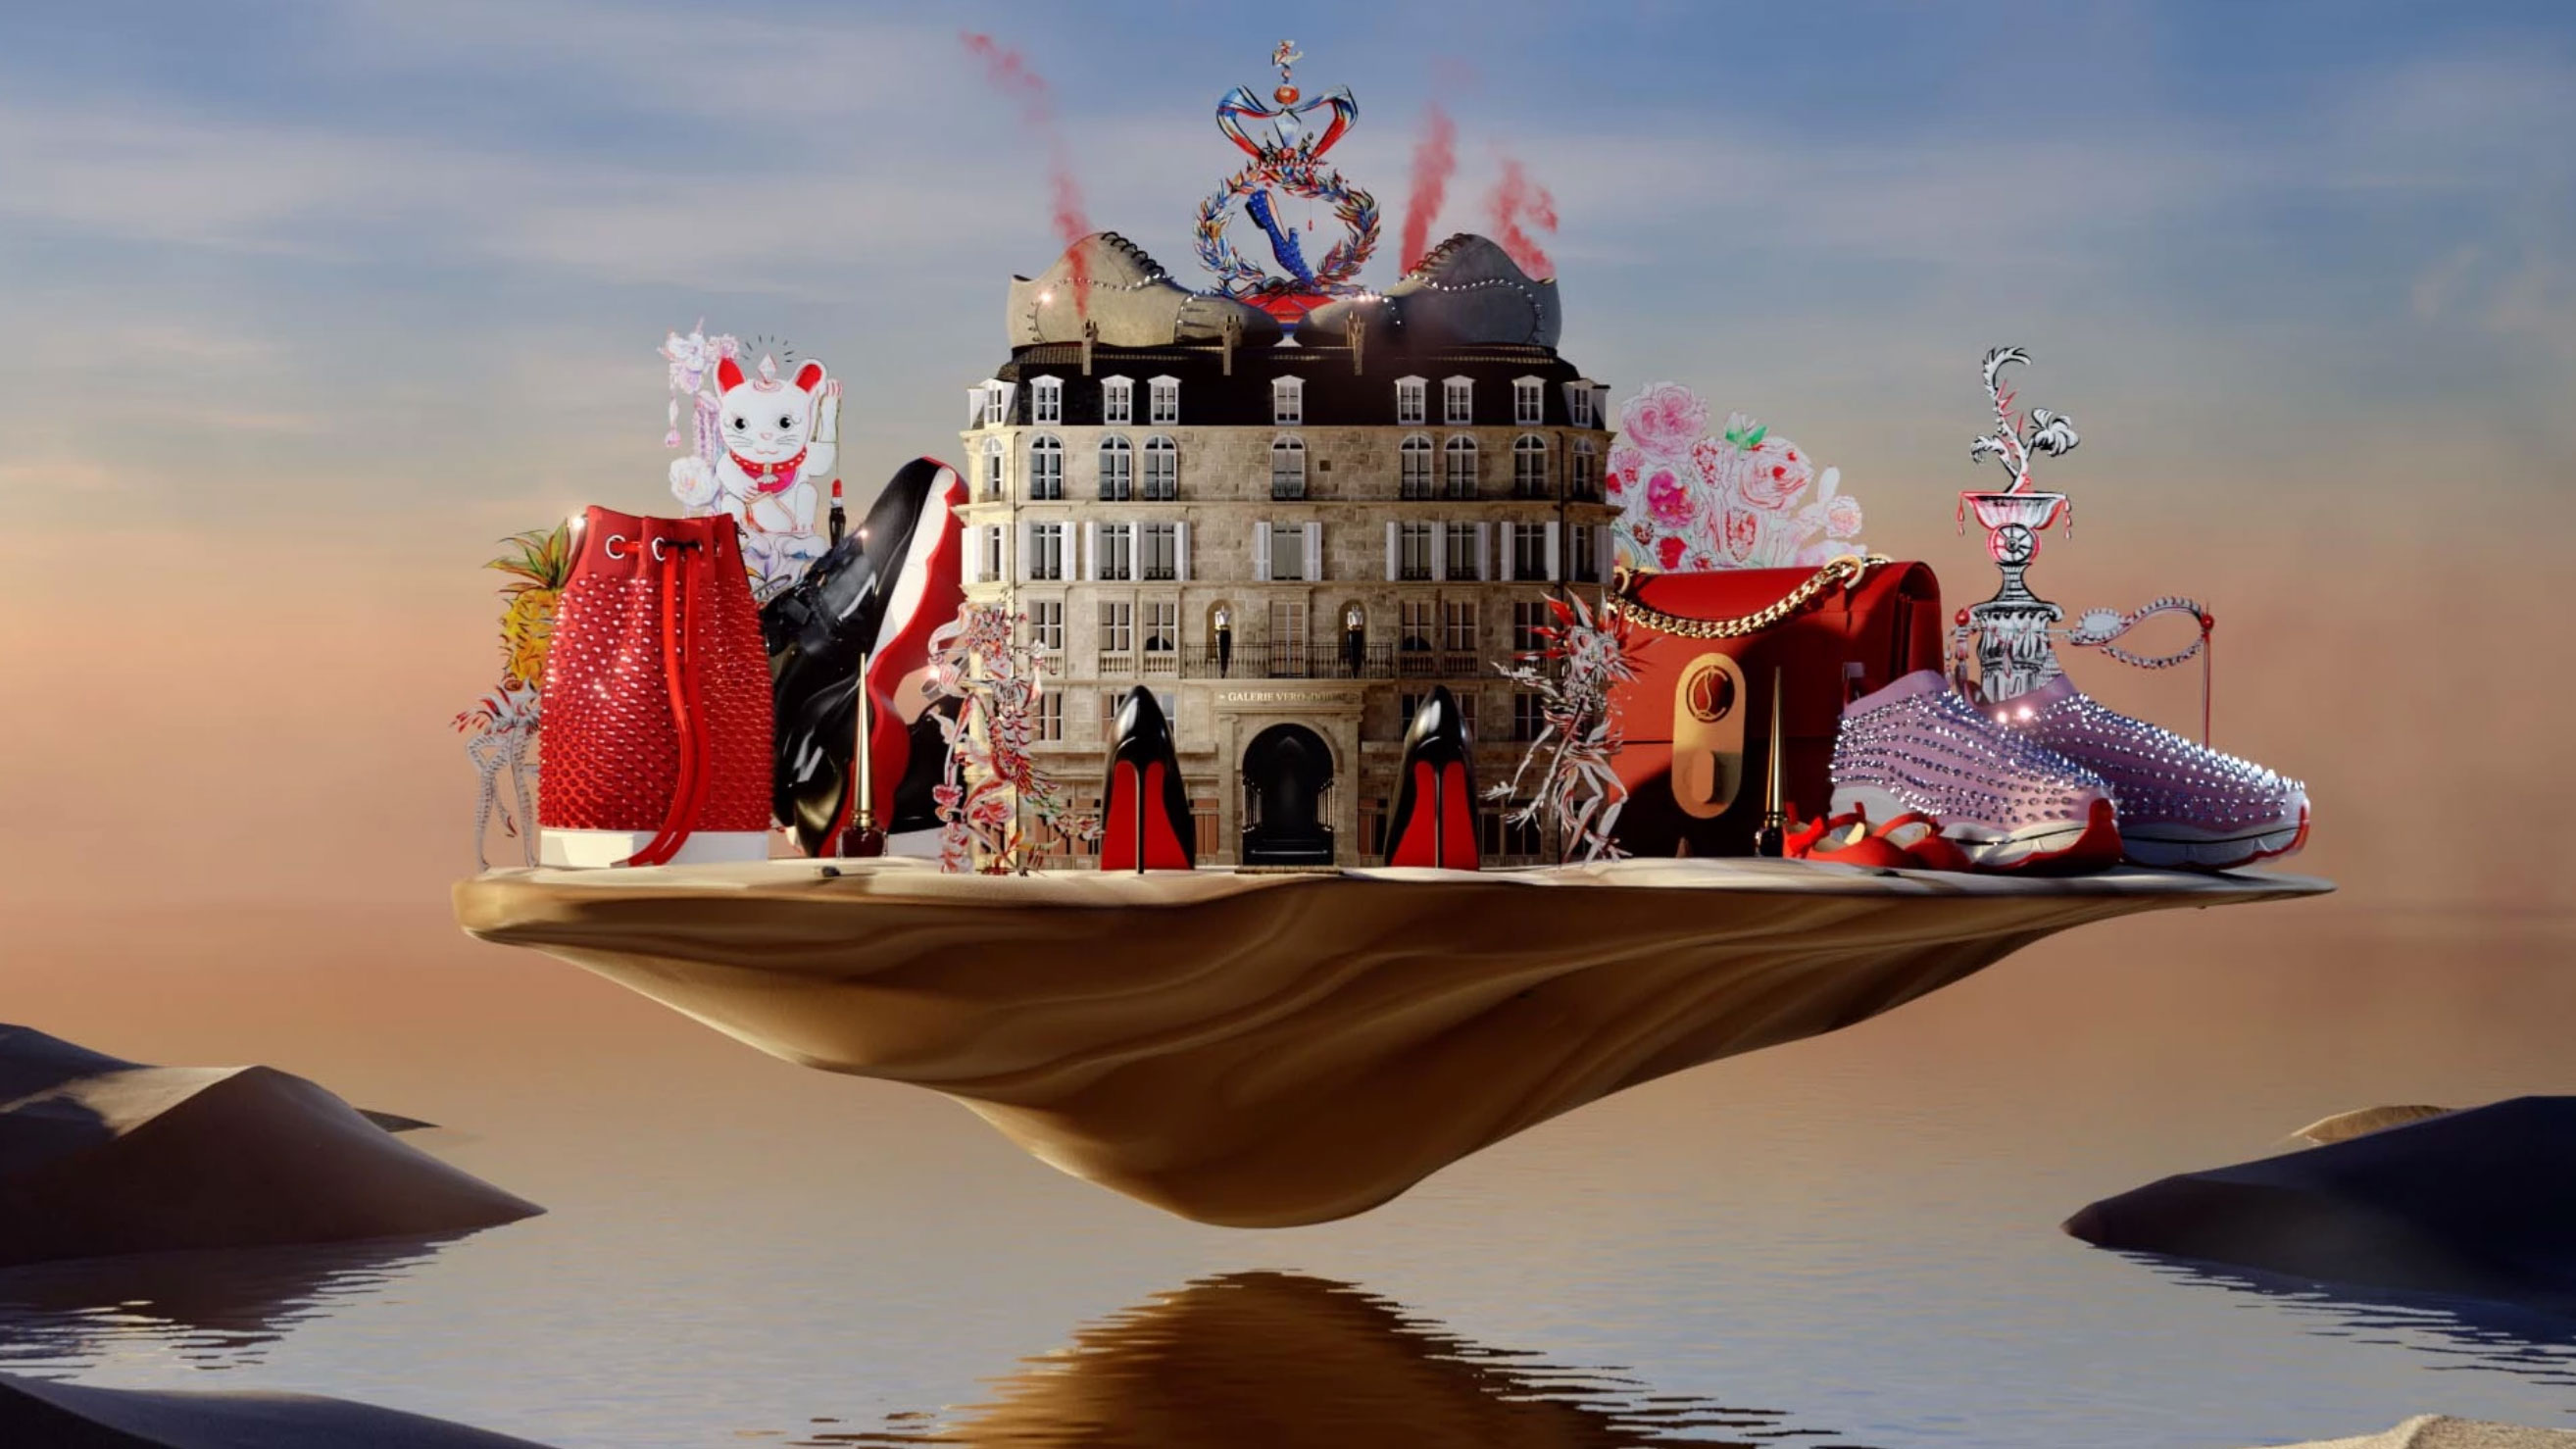 Christian Louboutin The Gift commercial by Velvet Badger | STASH MAGAZINE